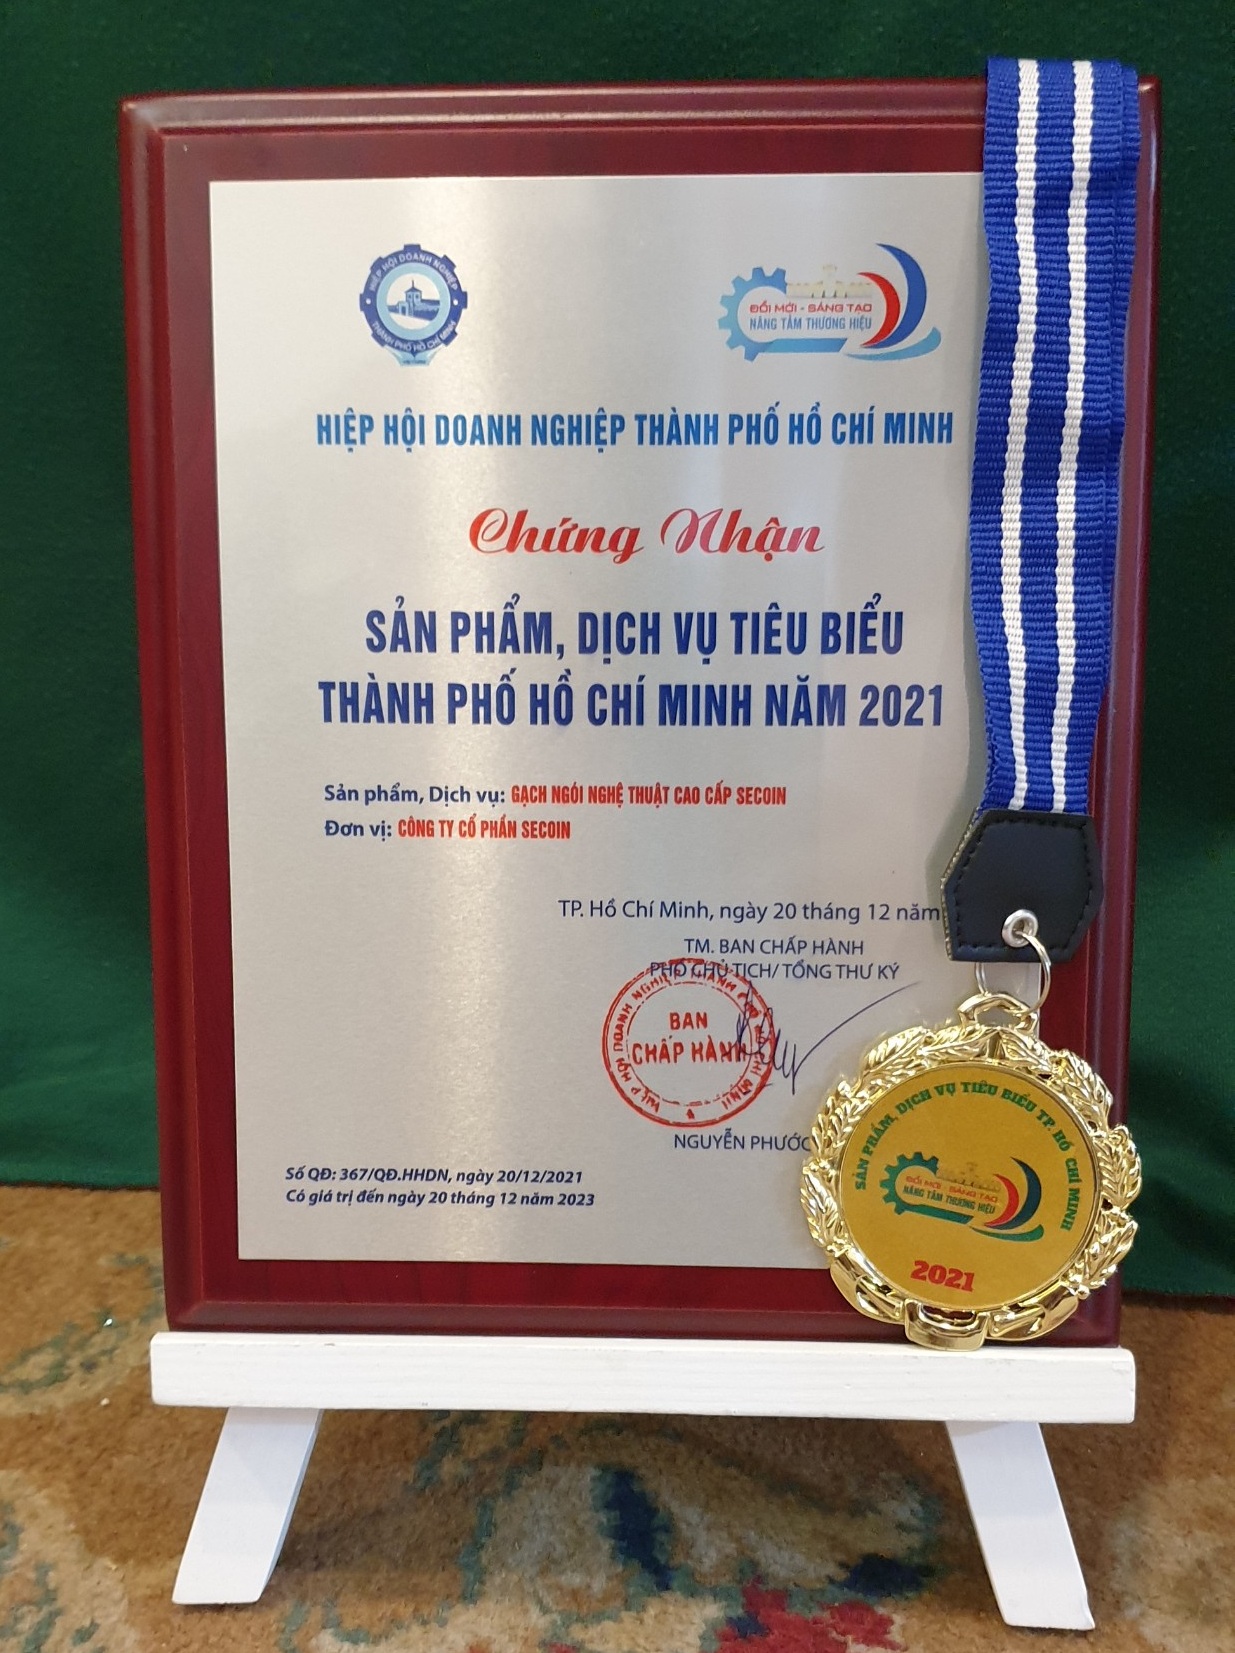 Secoin vinh dự đạt Danh hiệu “Sản phẩm, Dịch vụ tiêu biểu TP Hồ Chí Minh” năm 2021